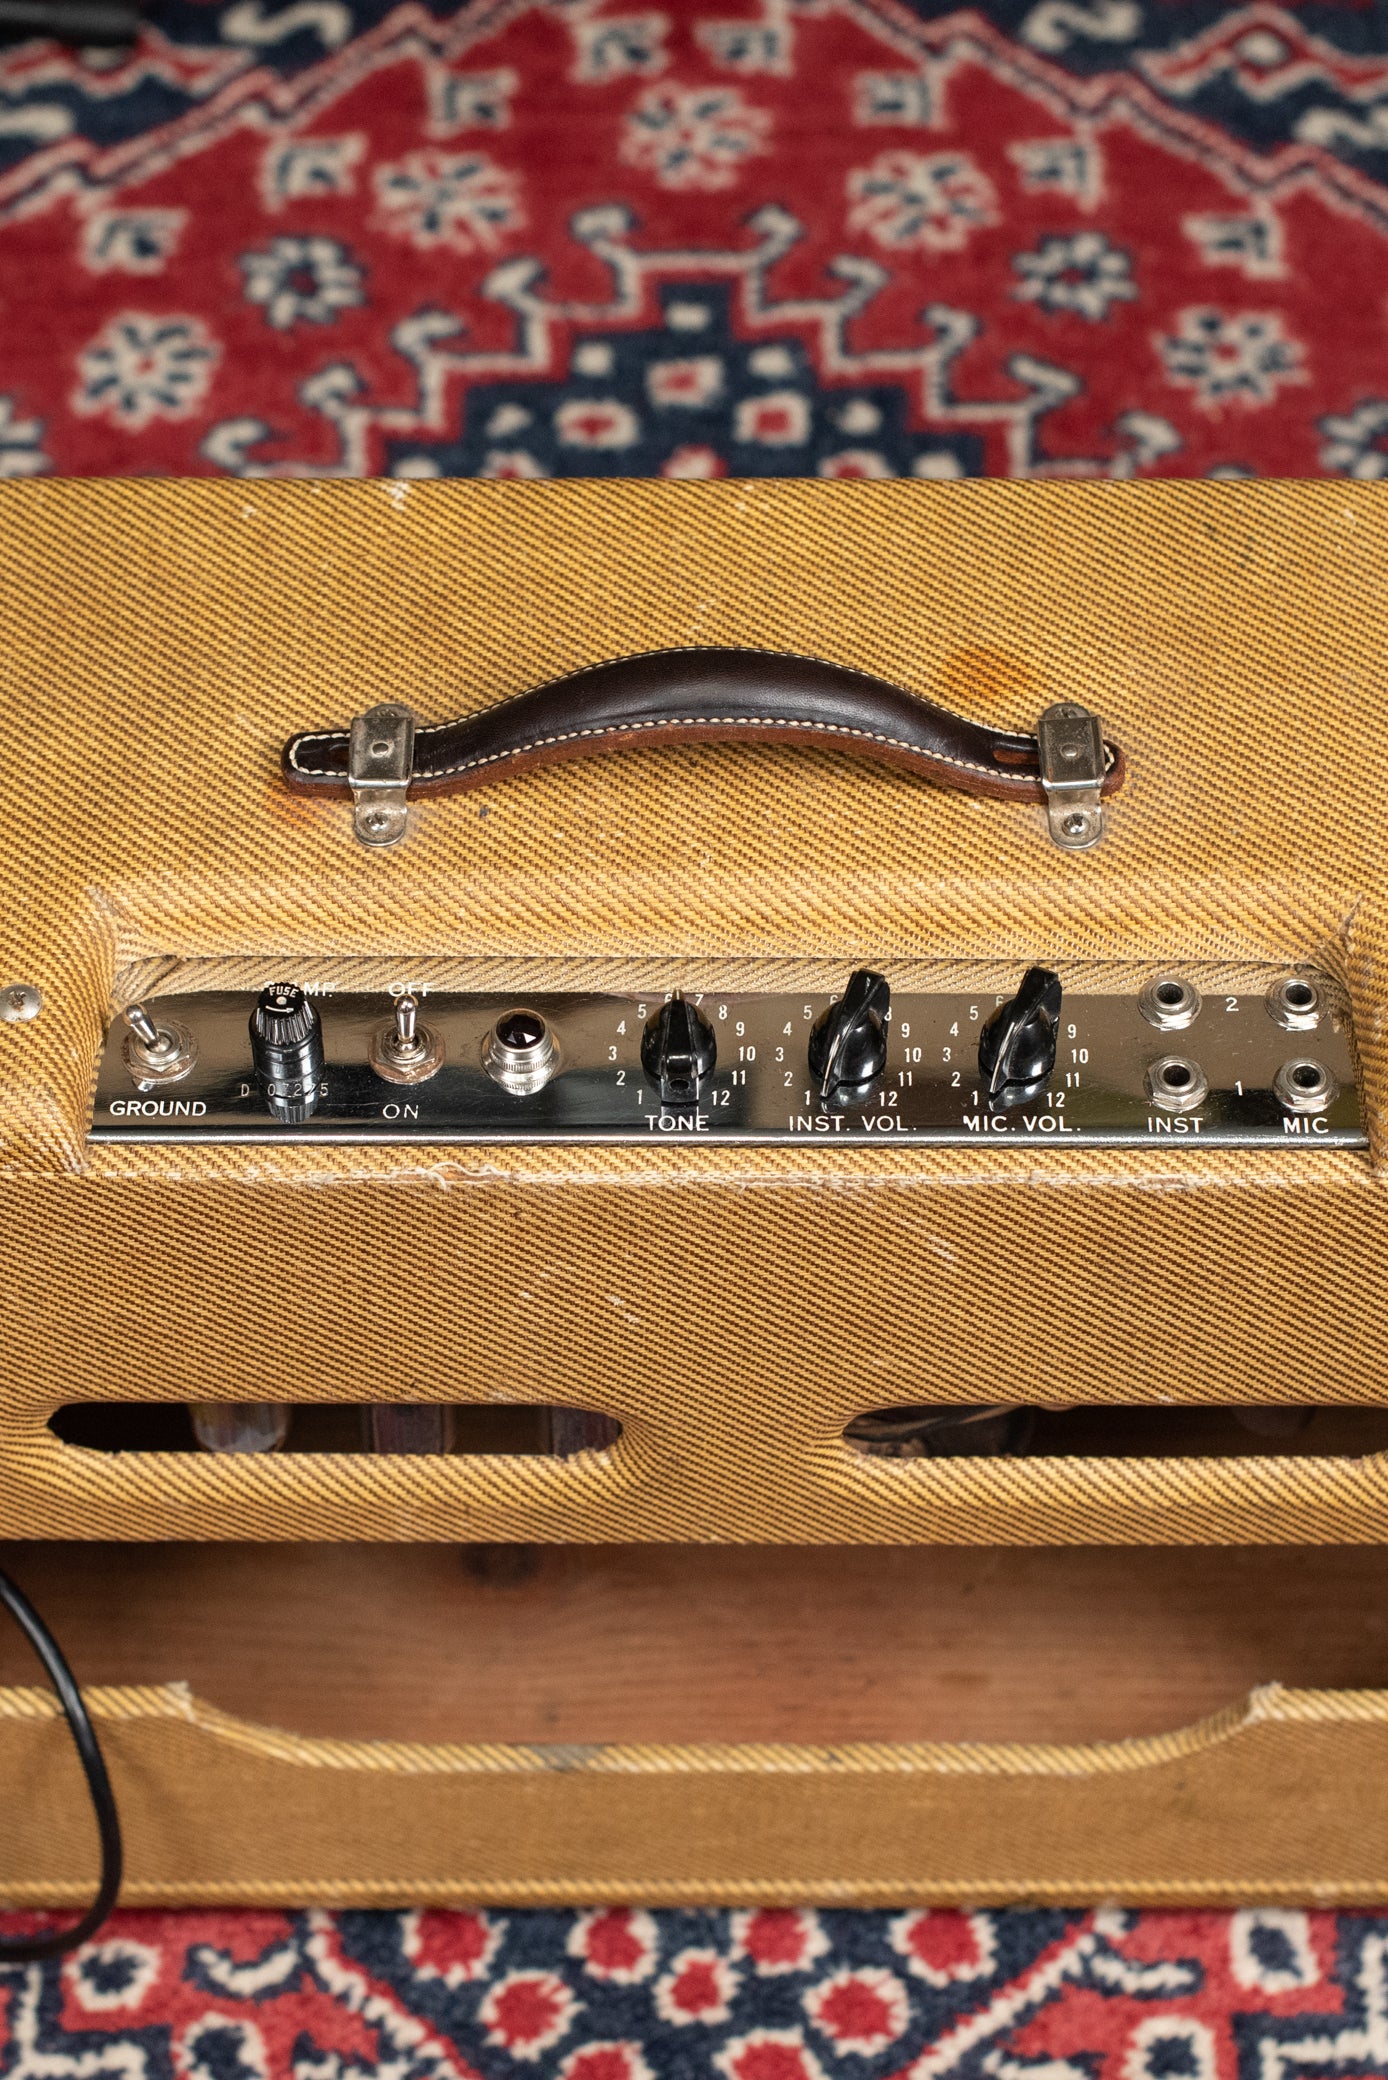 Vintage Fender Tweed Deluxe amp